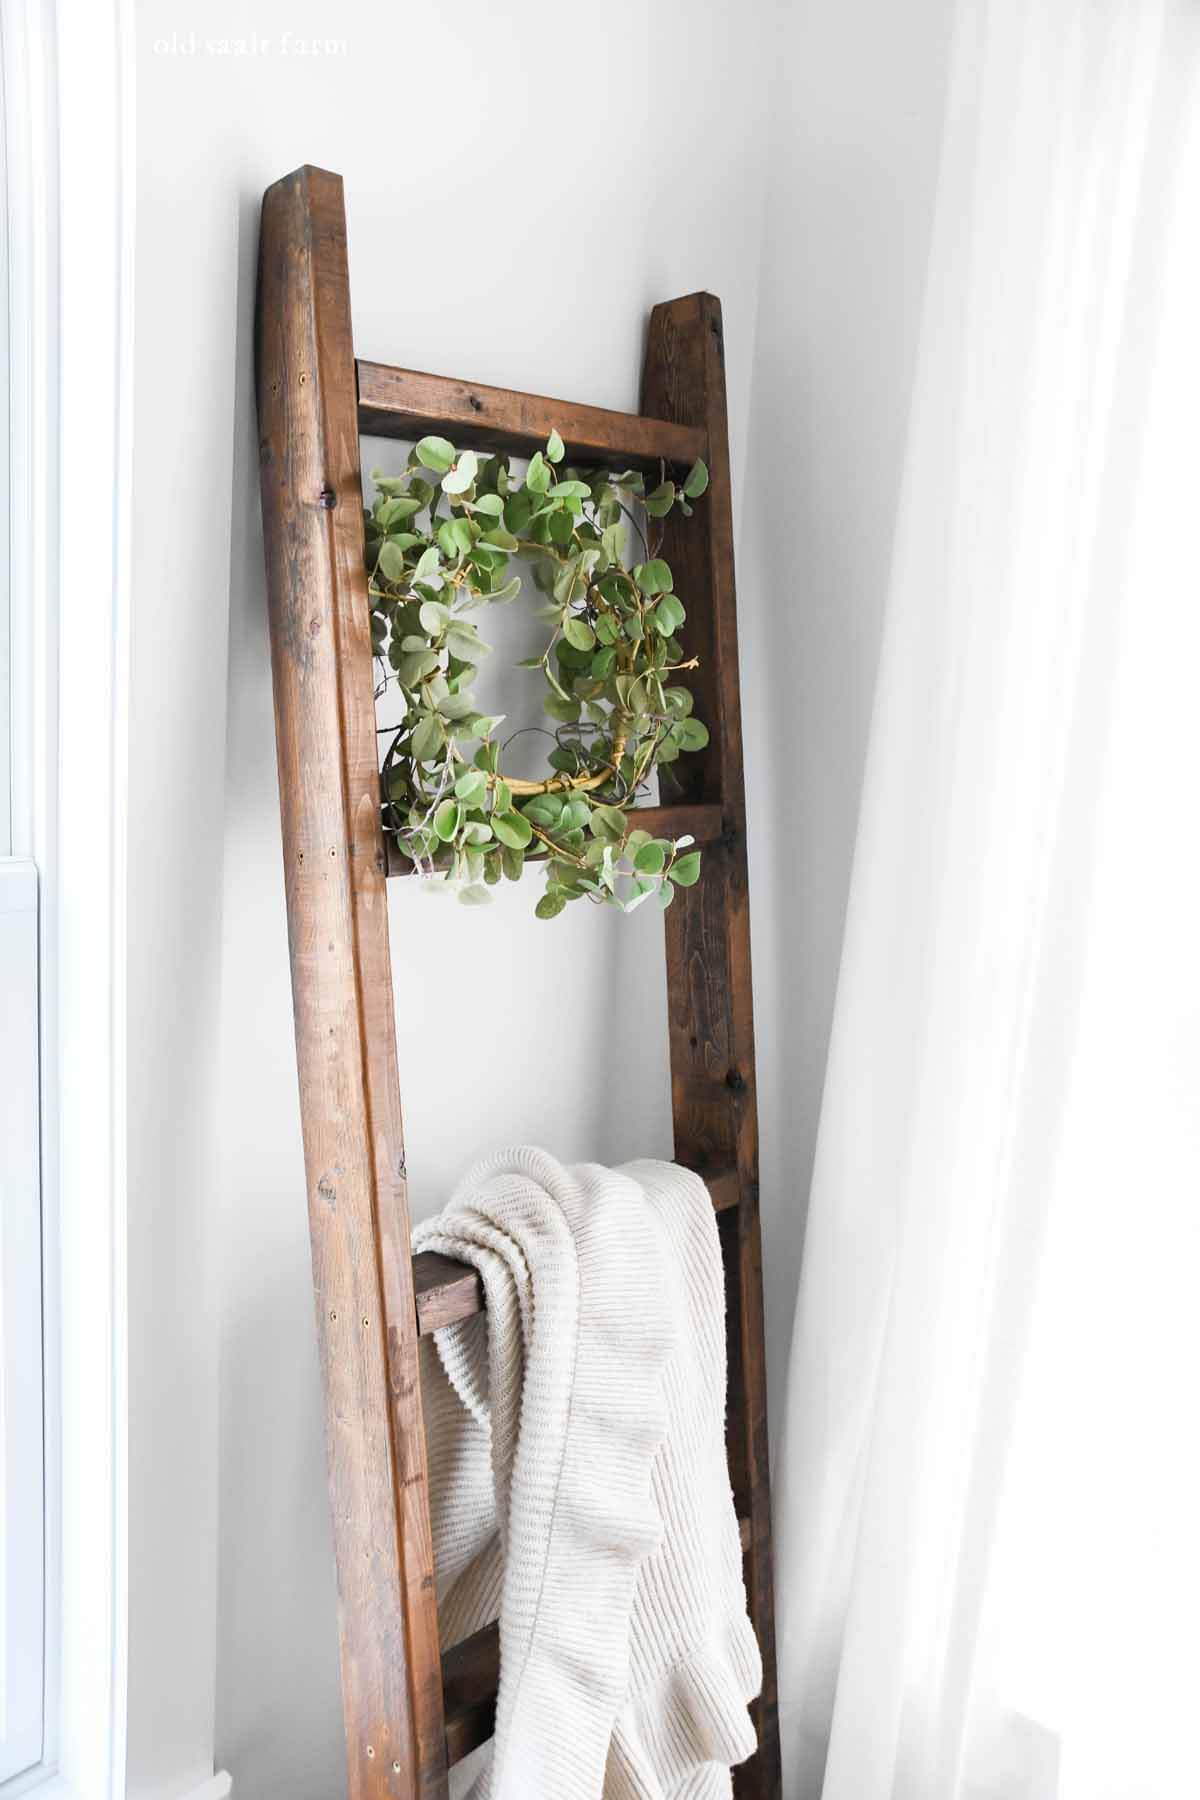 Easy $15 DIY Wooden Blanket Ladder